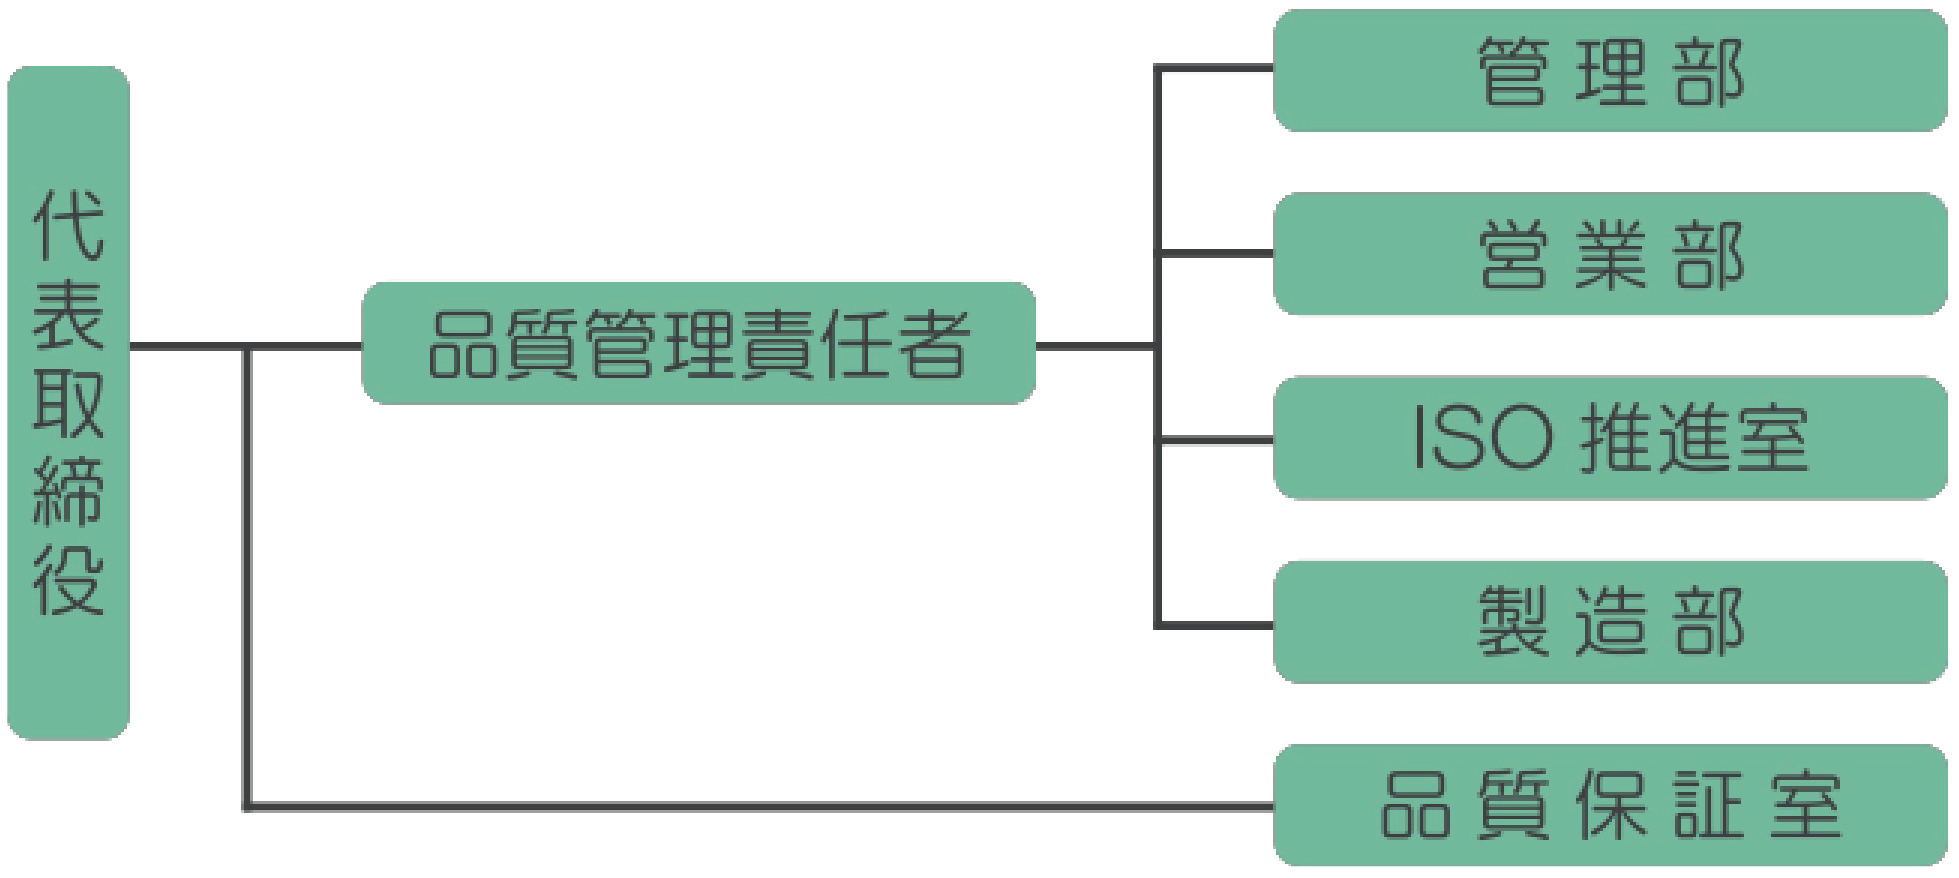 吉田喜九州の組織図 代表取締役 品質管理責任者 管理部 営業部 ISO推進部 製造部 品質保証室